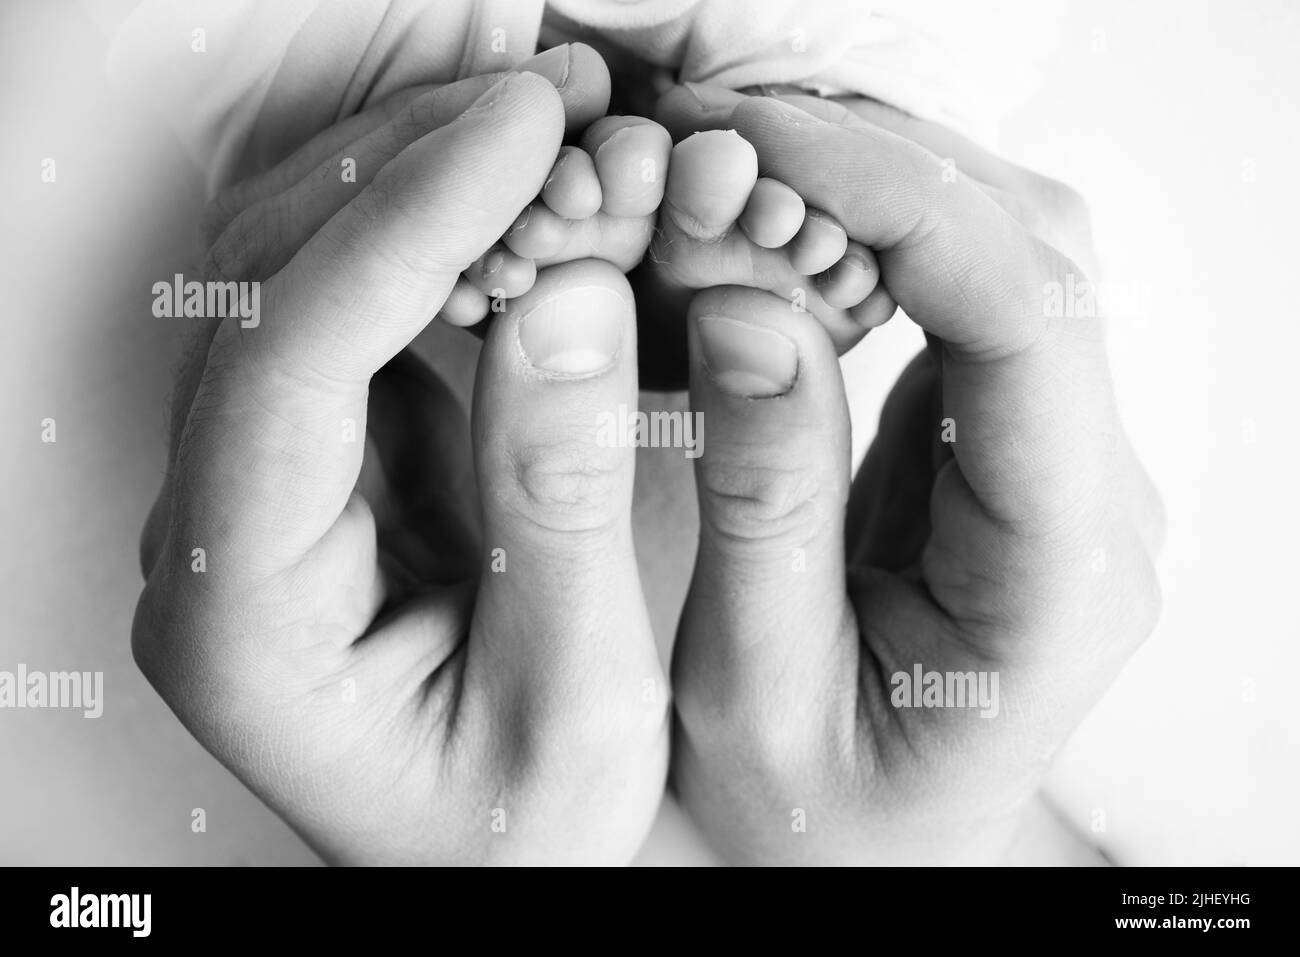 Ein Vater und eine Mutter halten ein neugeborenes Baby an den Beinen. Foto von Fuß, Fersen und Fingern. Schwarzweiß-Makrofotografie Stockfoto